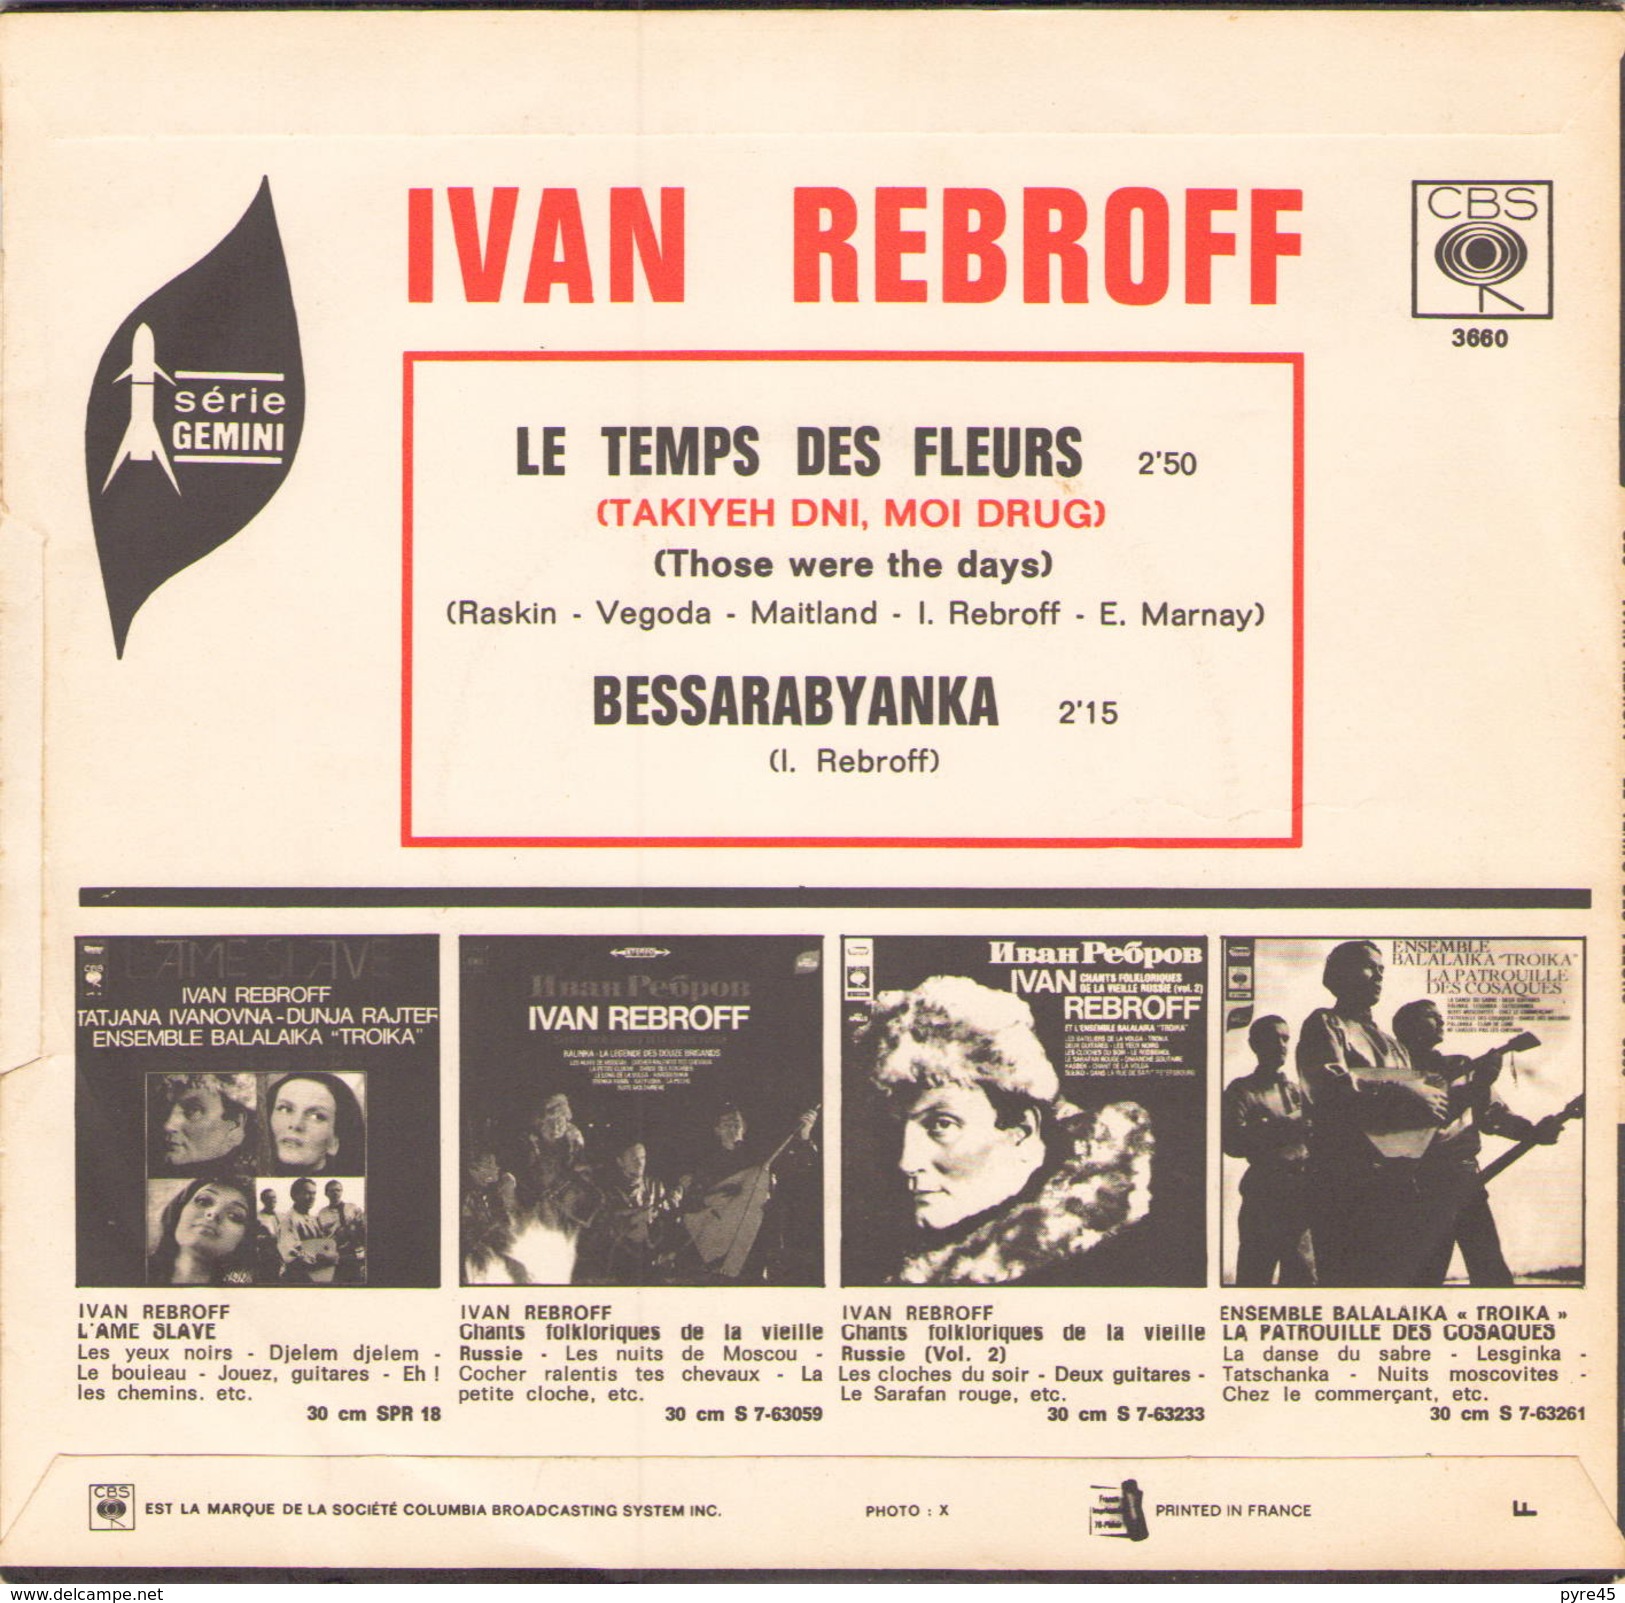 45 TOURS IVAN REBROFF CBS 3660 LE TEMPS DES FLEURS / BESSARABYANKA - Música Del Mundo